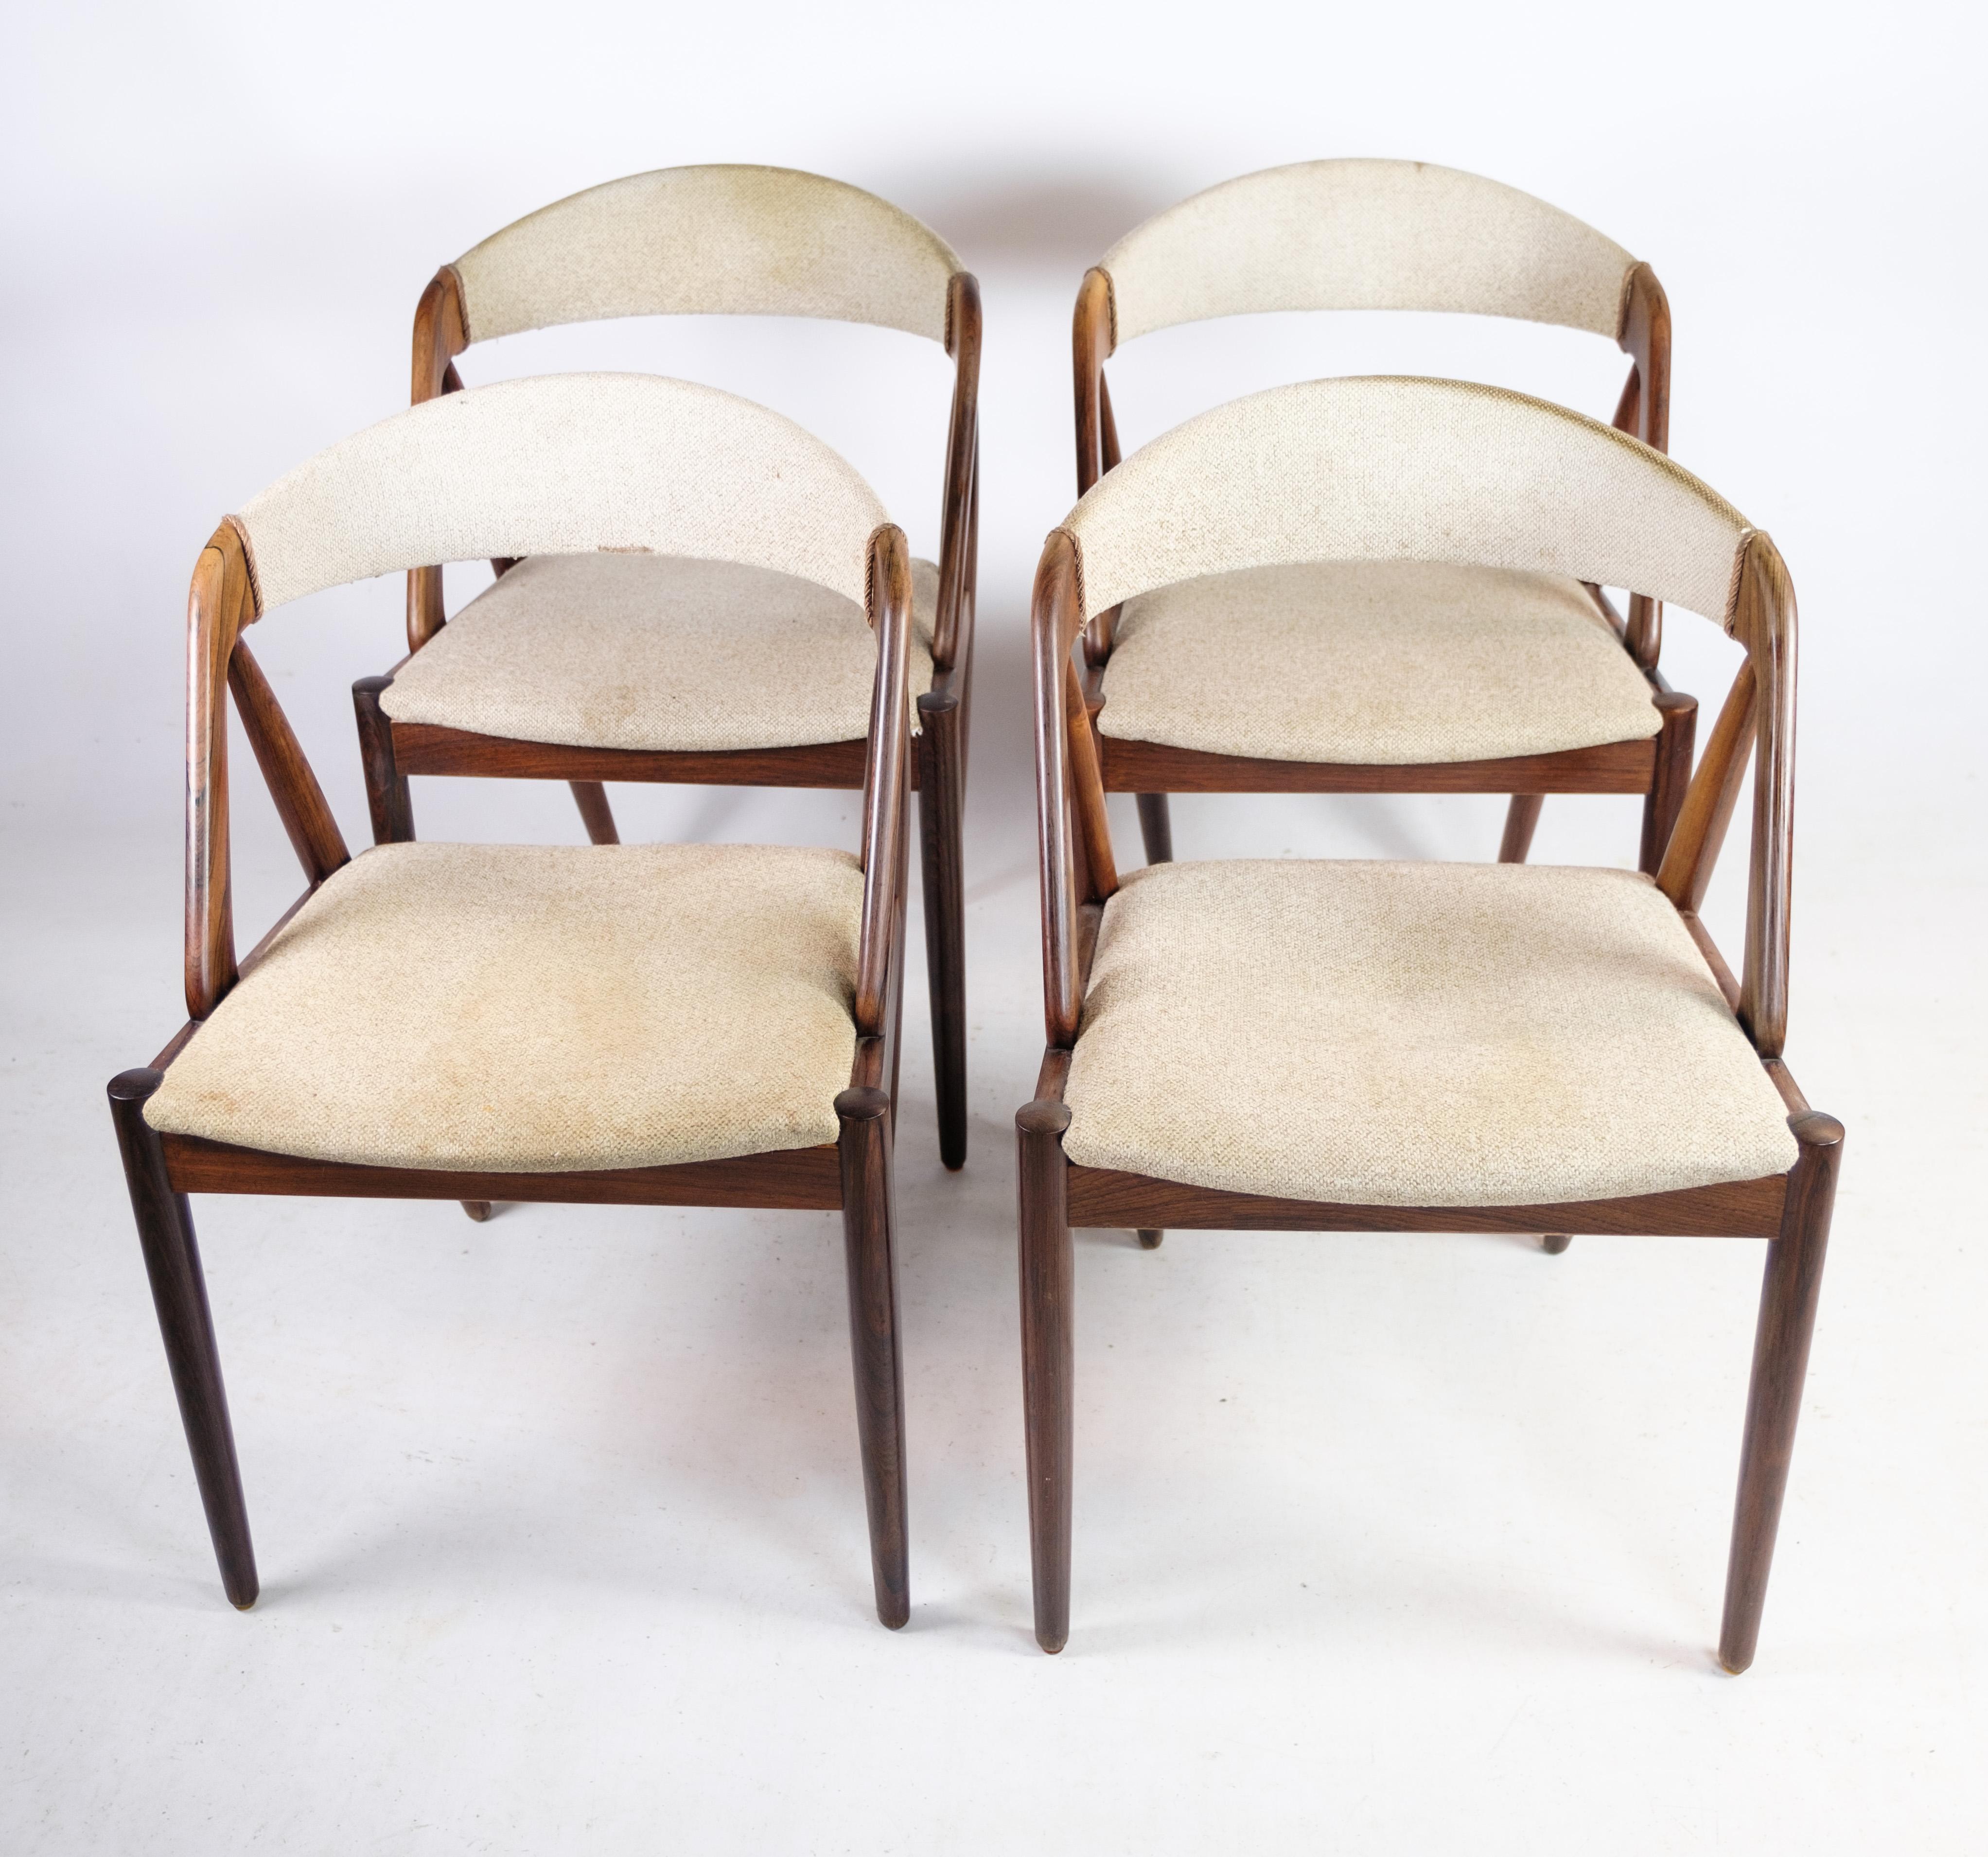 Un ensemble de quatre chaises de salle à manger, modèle 31, conçu par le célèbre designer danois Kai Kristiansen vers les années 1960. Ces chaises exquises sont fabriquées avec des cadres en bois de rose par Schou Andersen, mettant en valeur